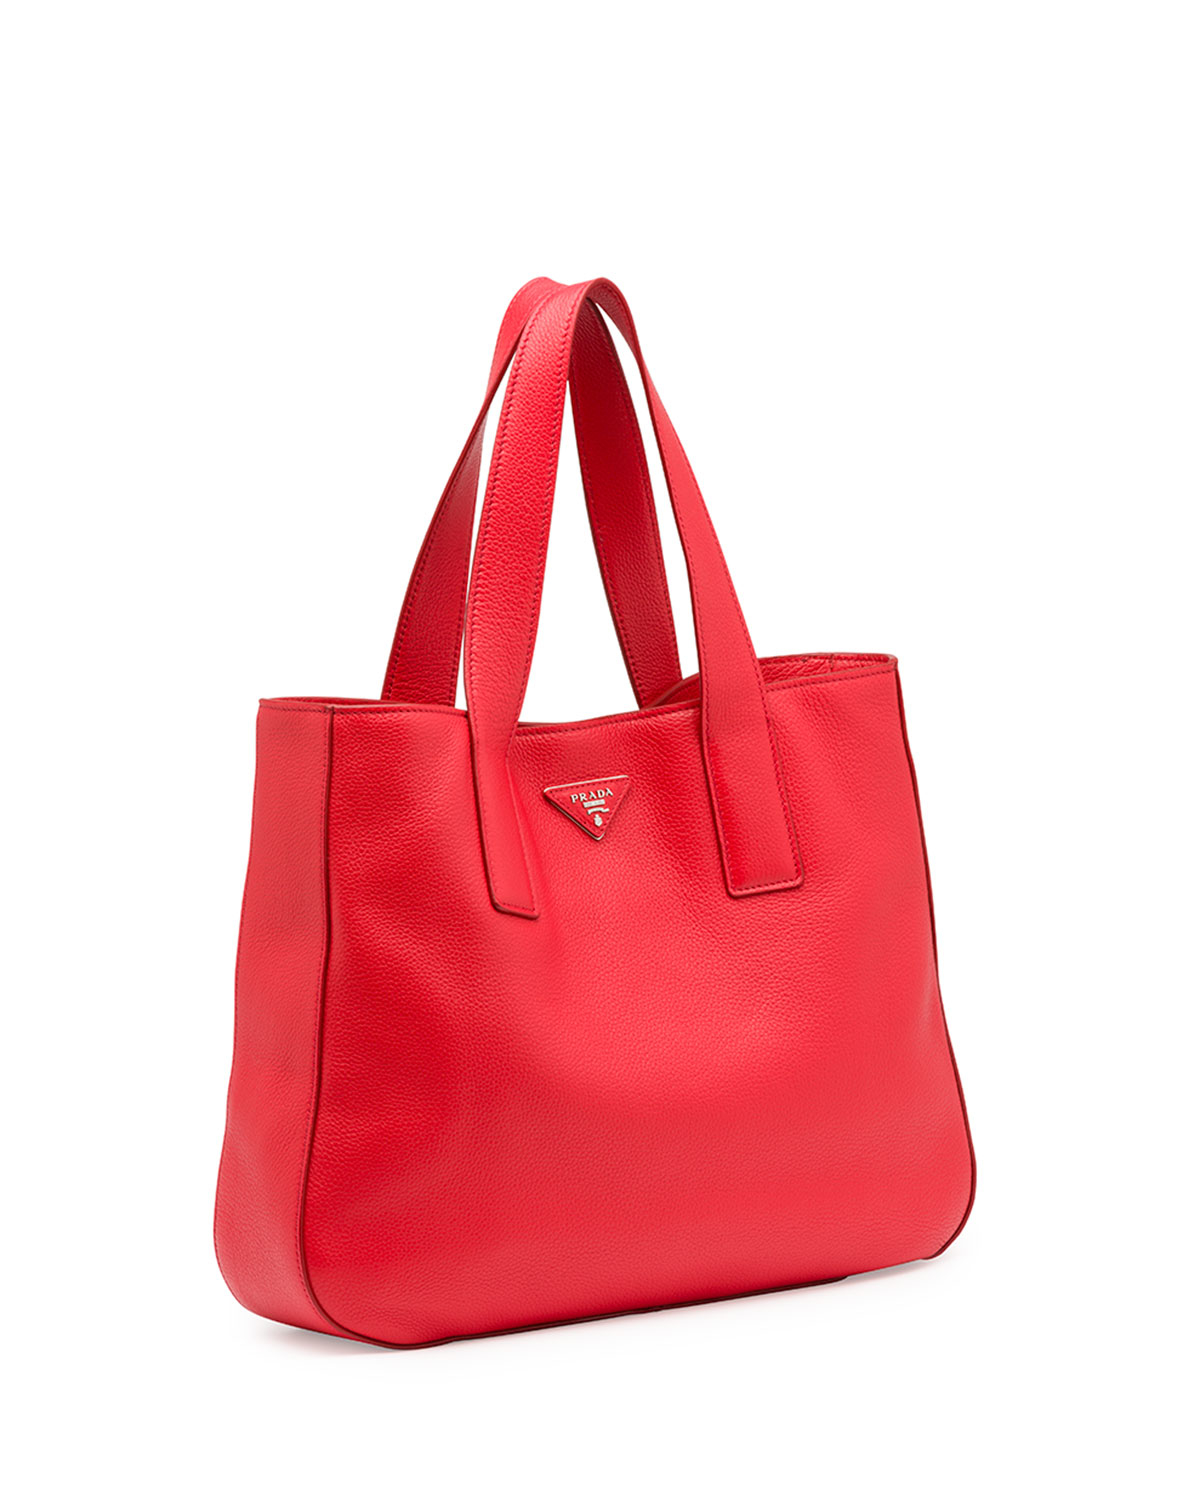 Prada Vitello Daino Leather Tote Bag in Red (LACCA) | Lyst